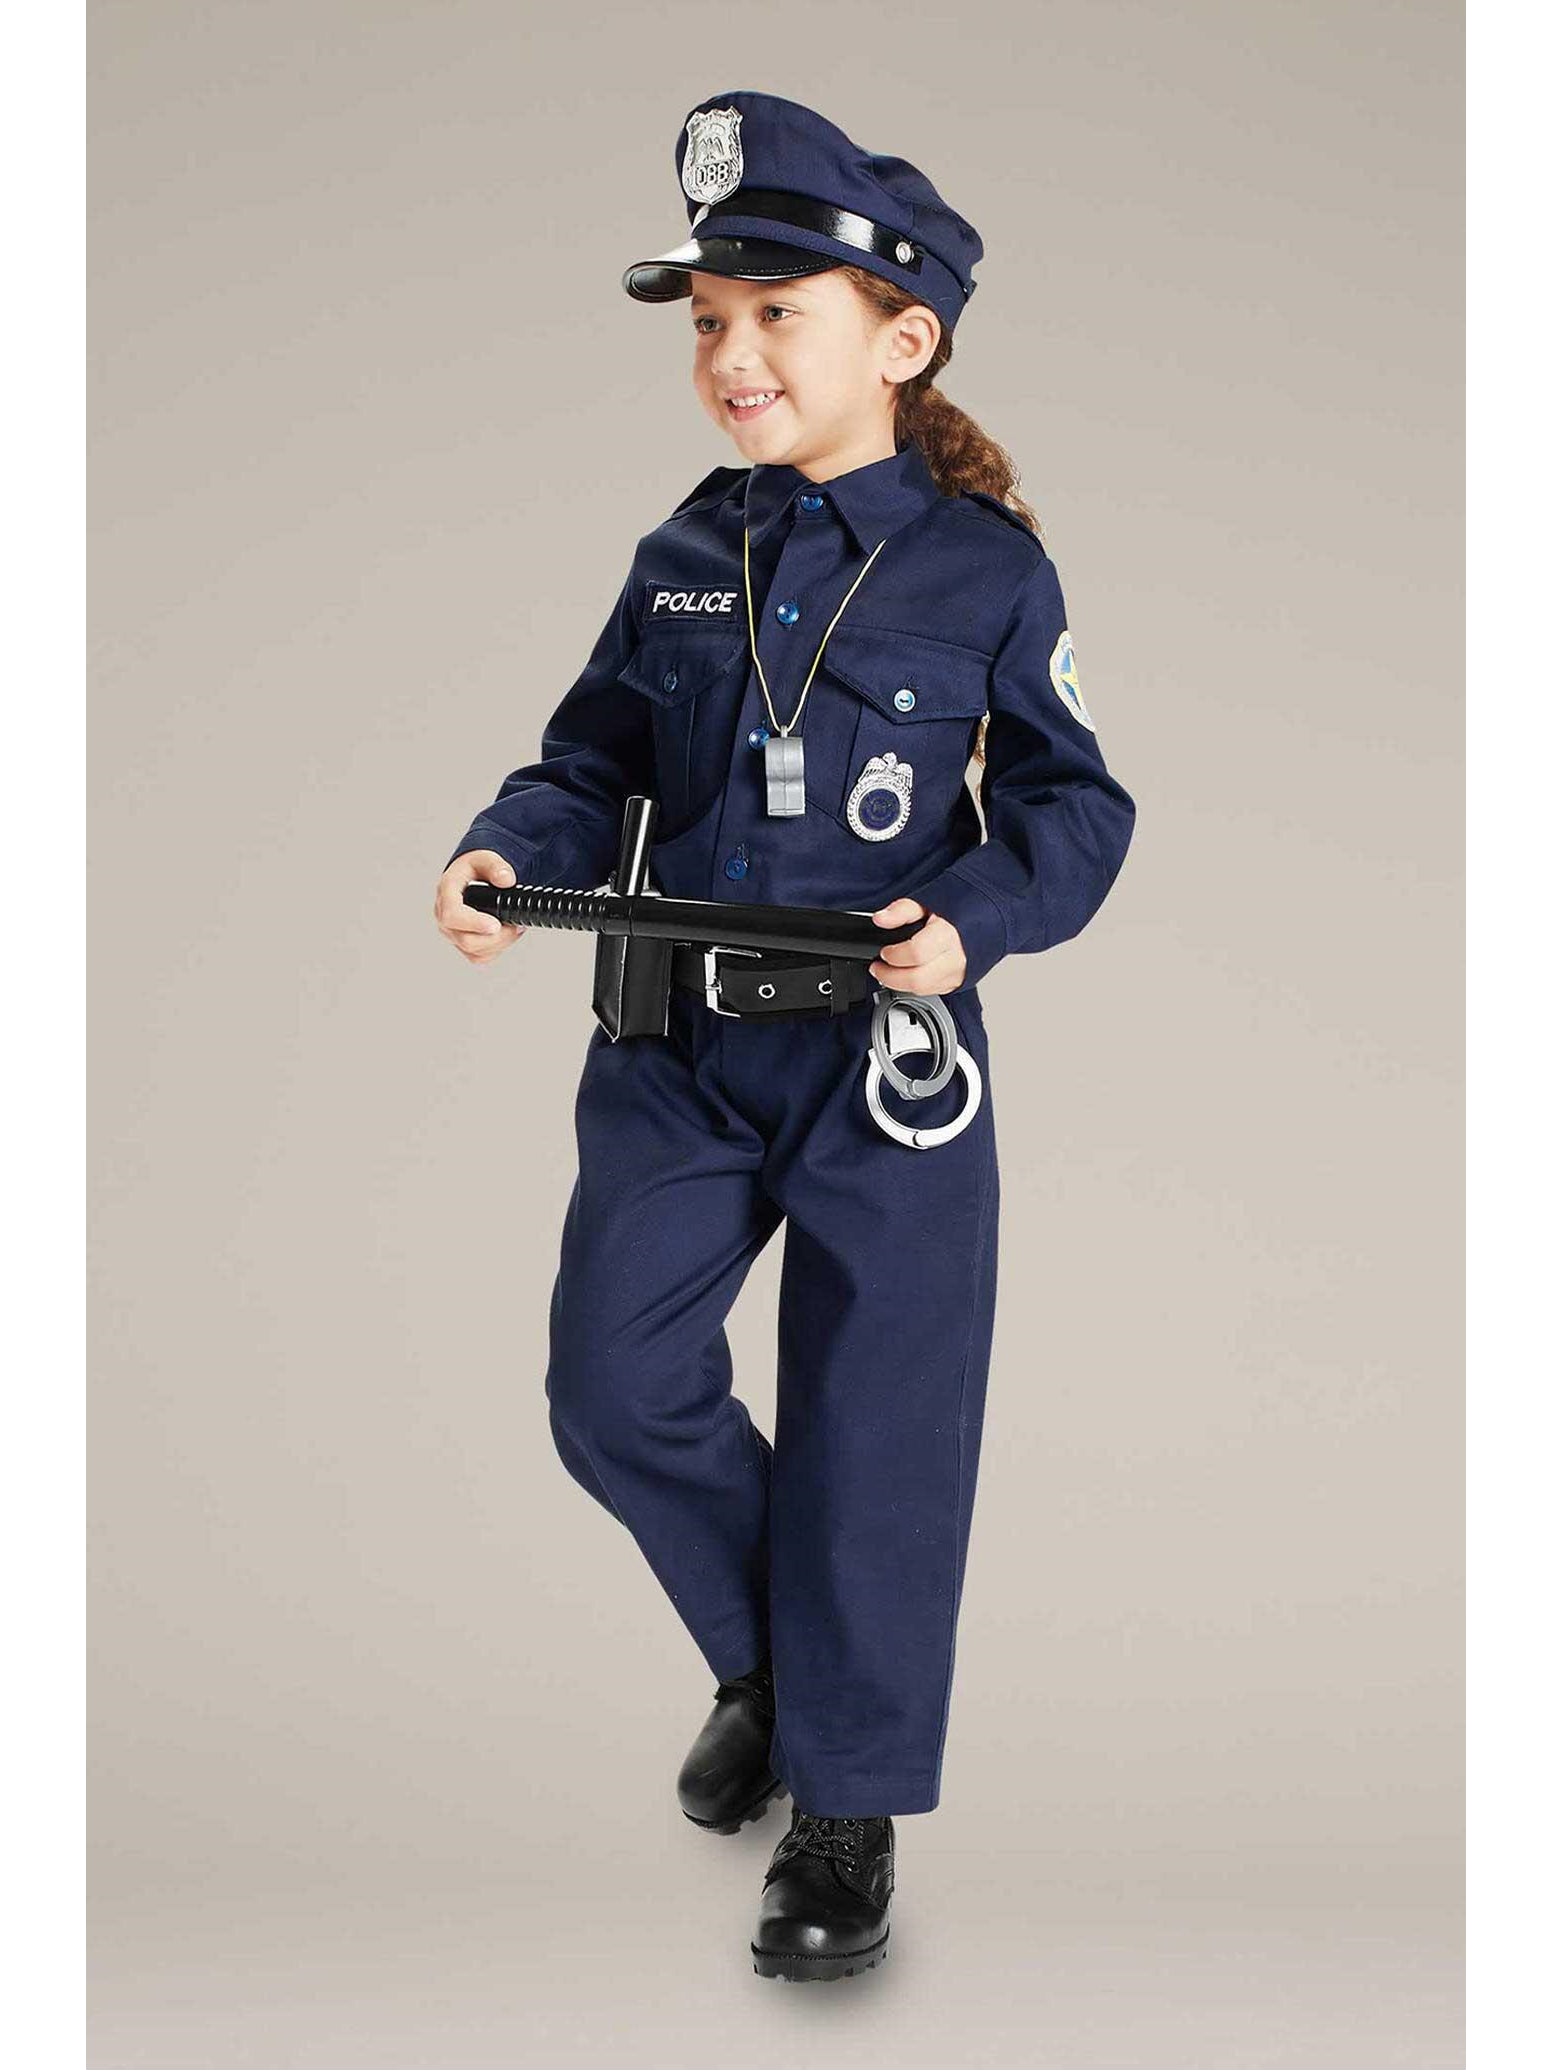 Jr. Police Officer Costume For Kids  blu alt2